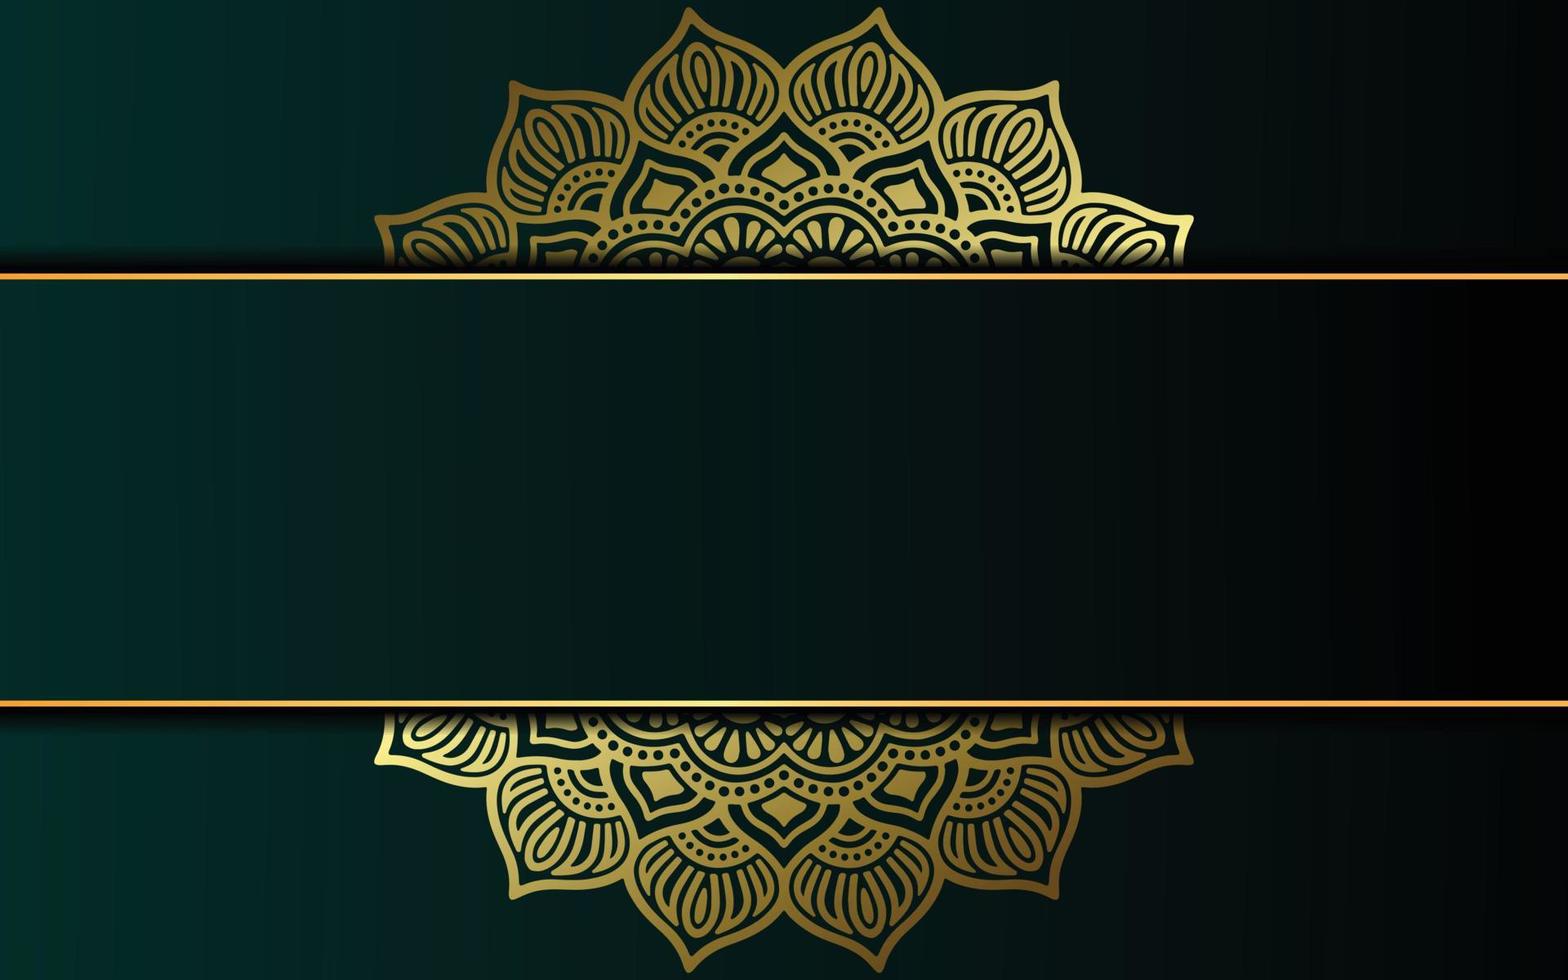 luxe mandala achtergrond met gouden arabesk patroon arabische islamitische Oost-stijl. decoratieve mandala in ramadan-stijl. mandala om af te drukken, poster, omslag, brochure, flyer, banner vector